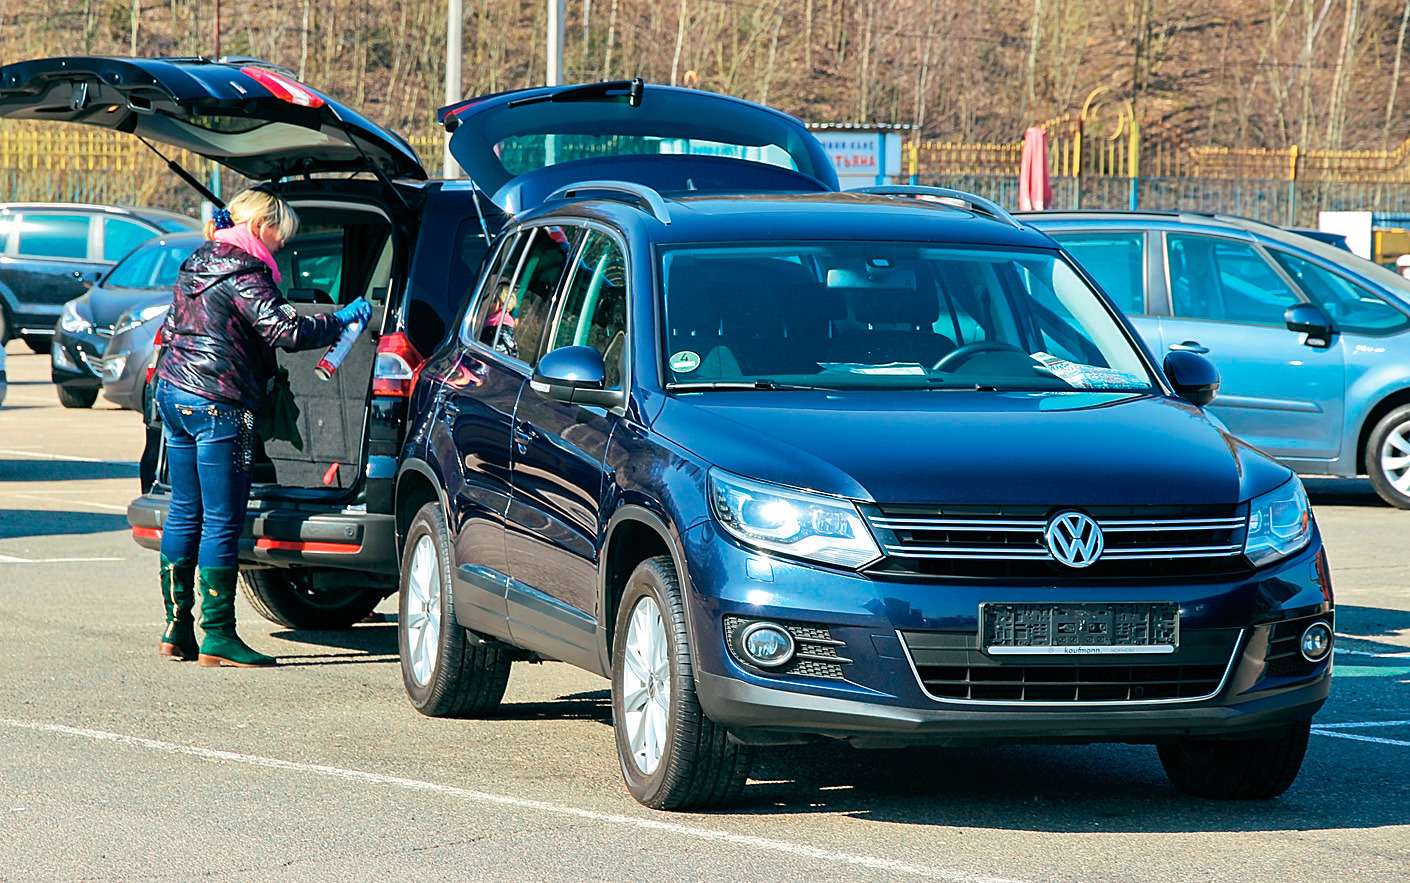 Цены на Volkswagen Tiguan начинаются с 756 000 рублей – столько просят за машину 2008 года. Средняя цена Тигуана 2012 года – чуть больше миллиона рублей.